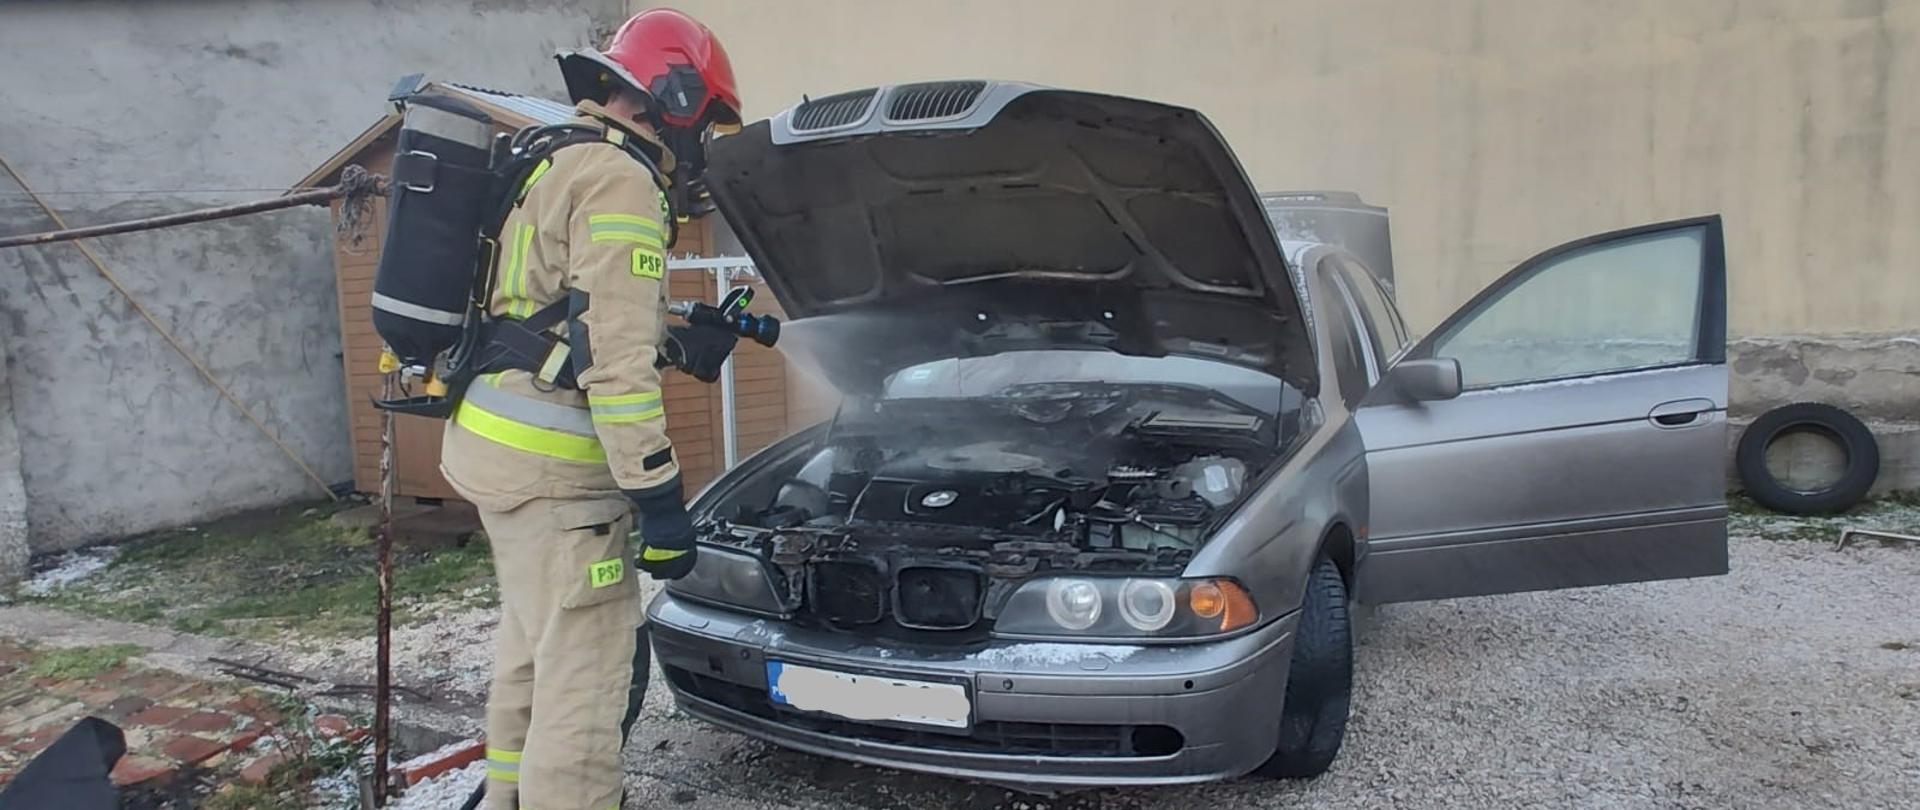 Zdjęcie przedstawia samochód osobowy z otwartą pokrywą silnika. Z komory silnika wydostaje się dym i para wodna. Przed autem stoi strażak podający prąd wody.